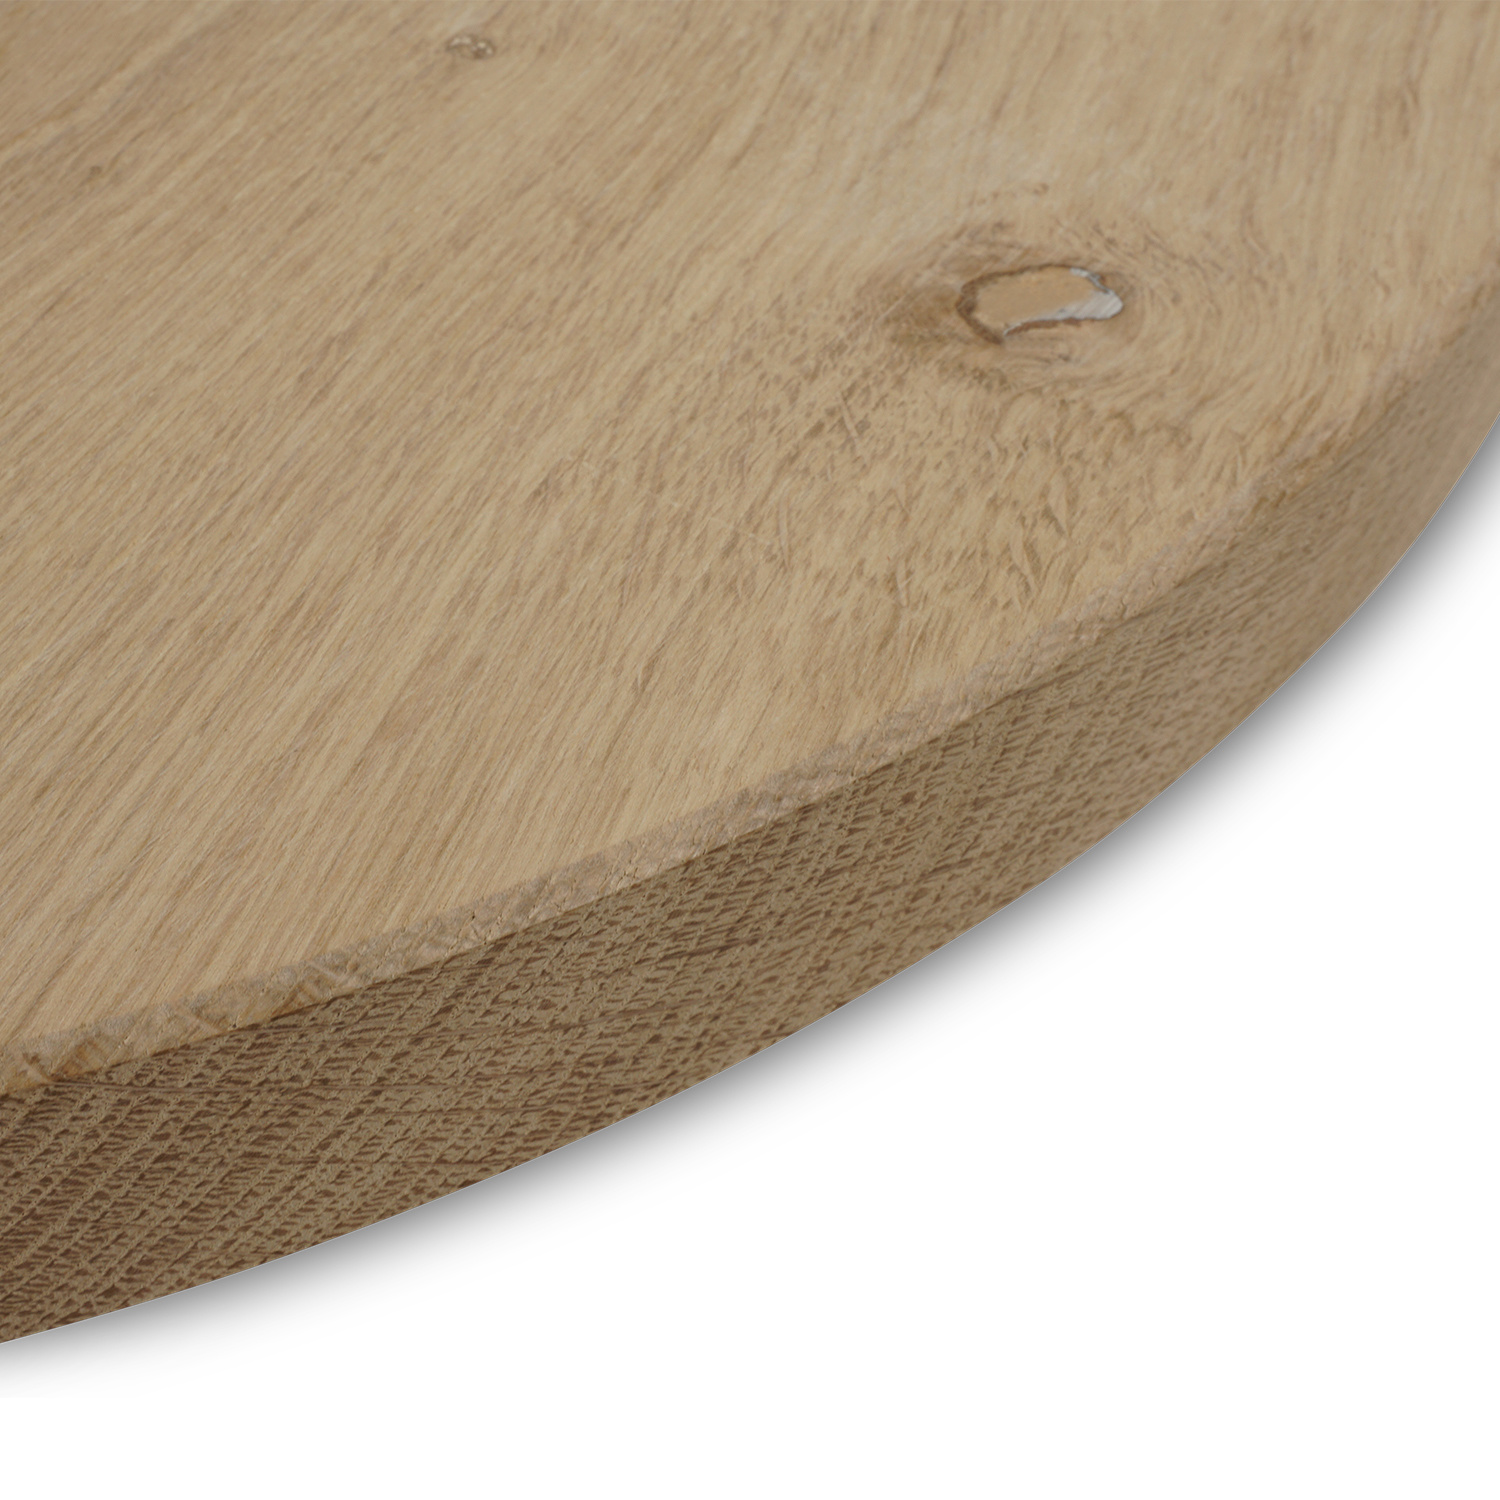  Rond eiken tafelblad op maat - 4 cm dik (1-laag) - rustiek Europees eikenhout - verlijmd kd 8-12% - diameter van 30 tot 180 cm